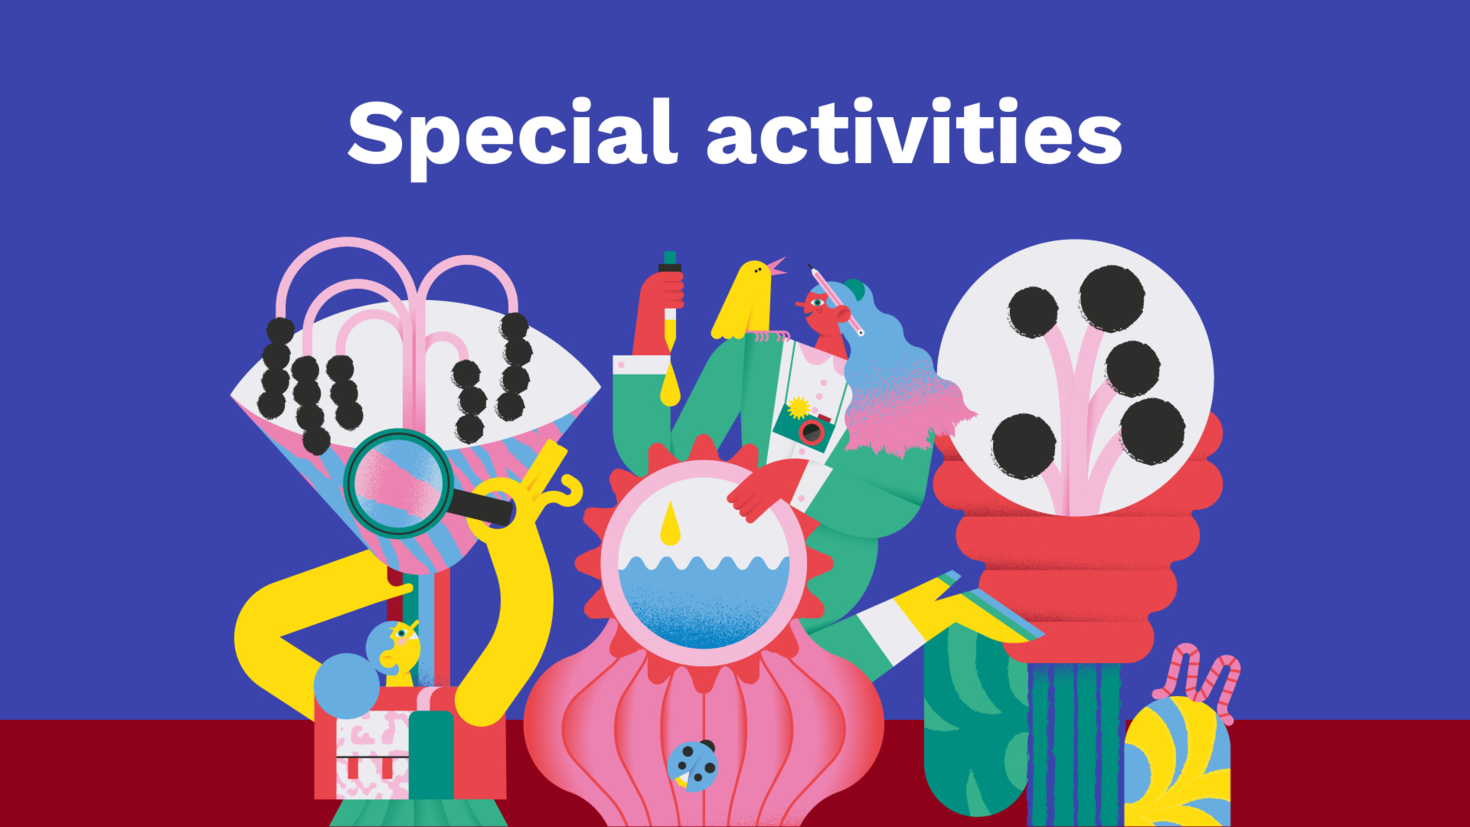 Special activities